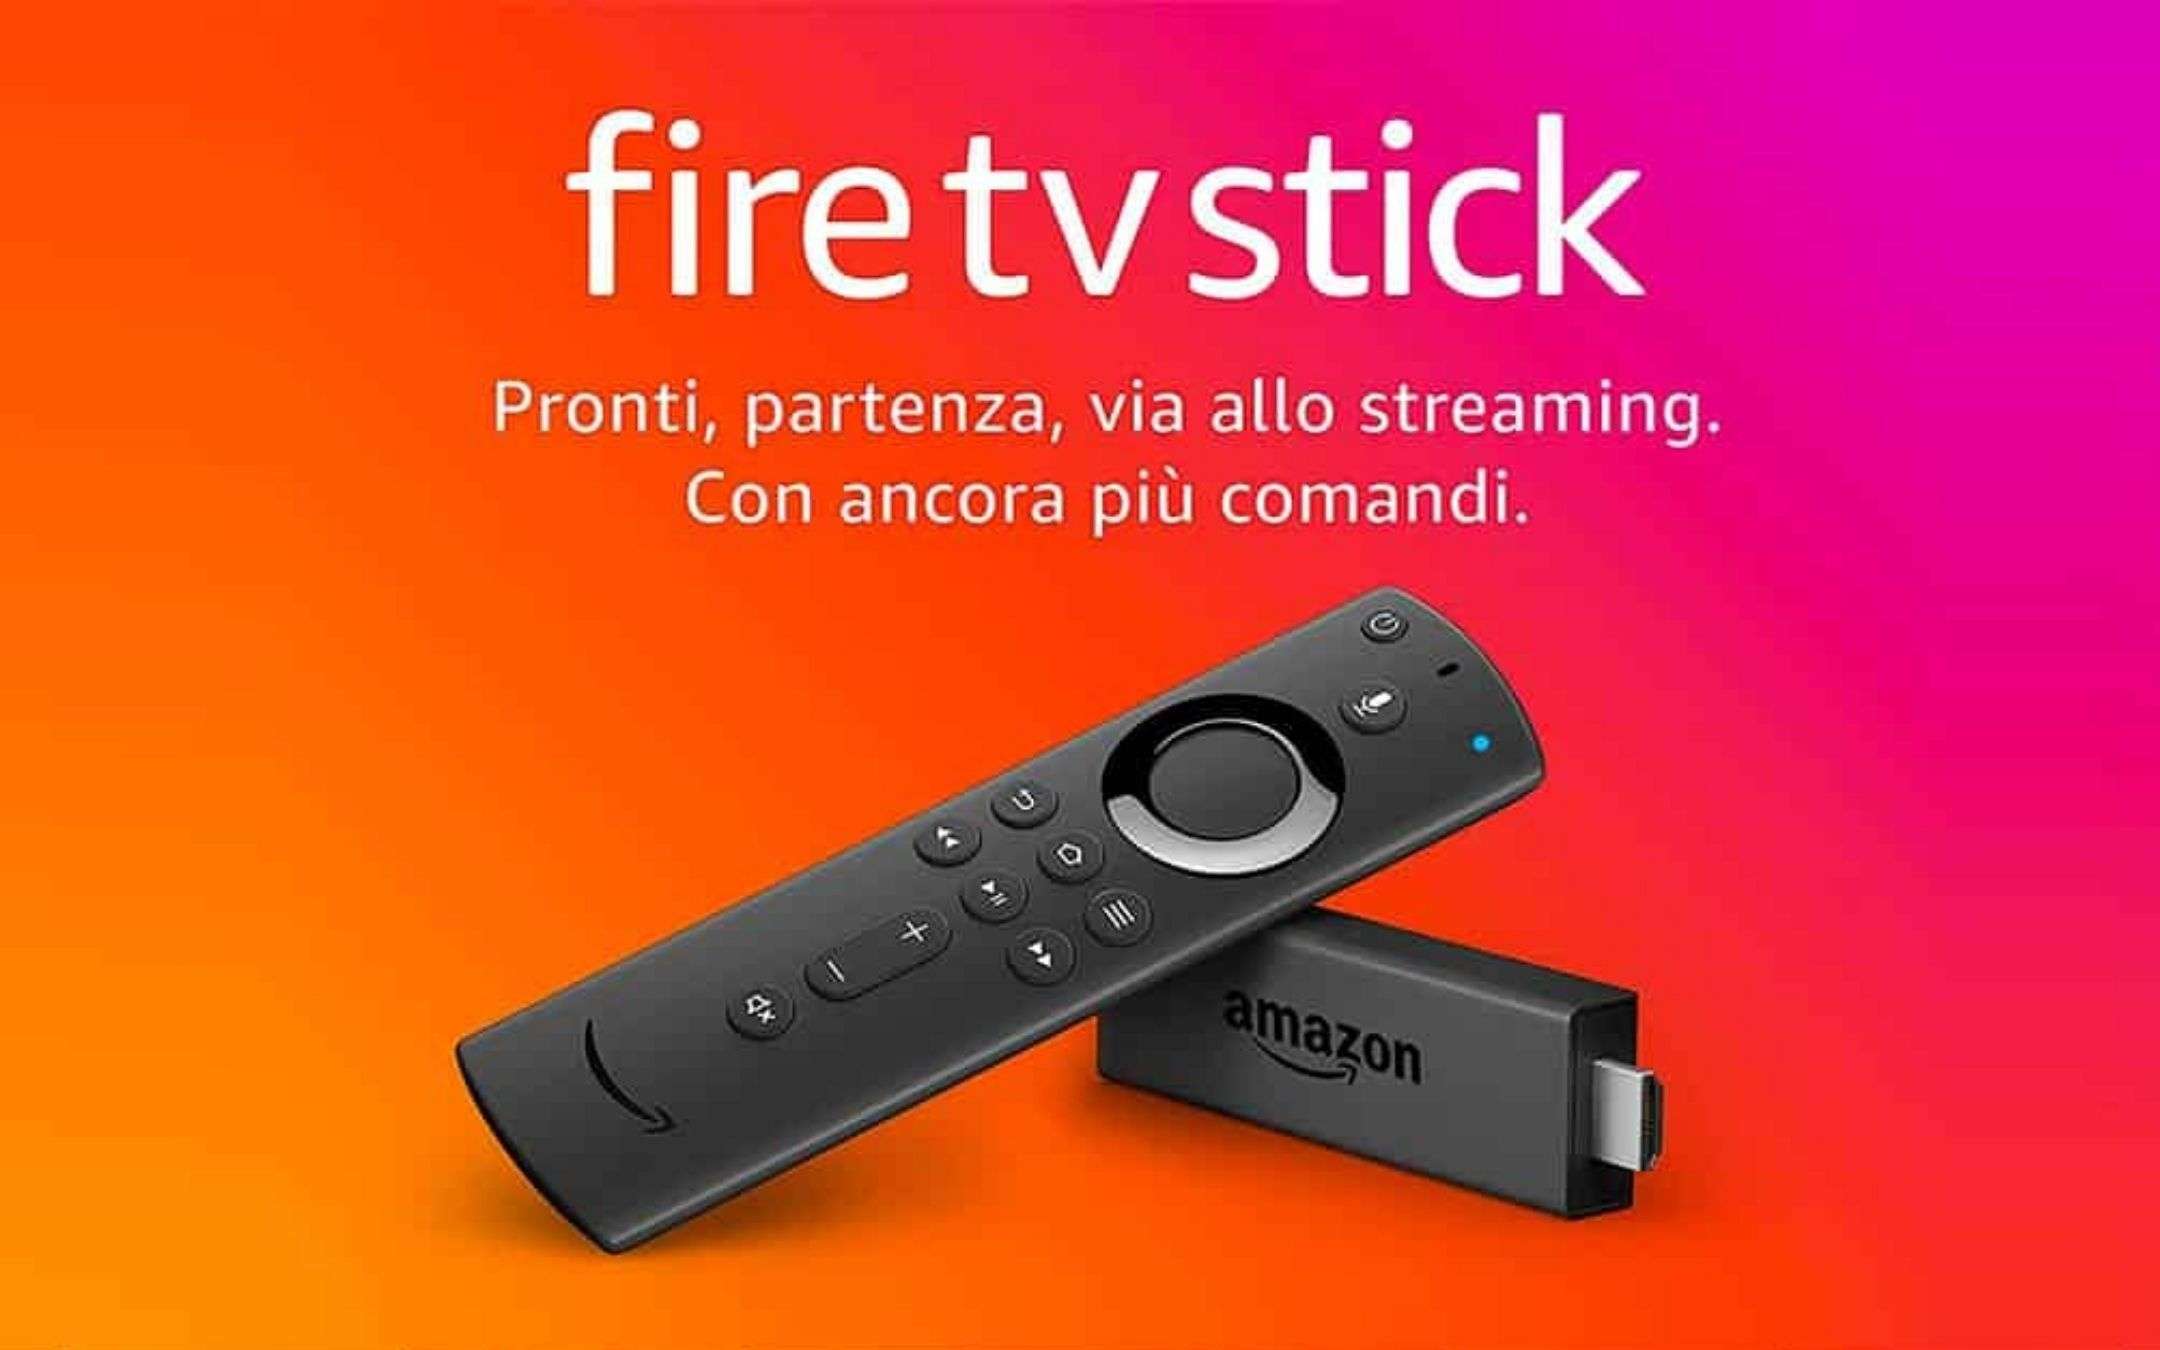 Amazon batte Samsung: la Fire TV stick è la REGINA